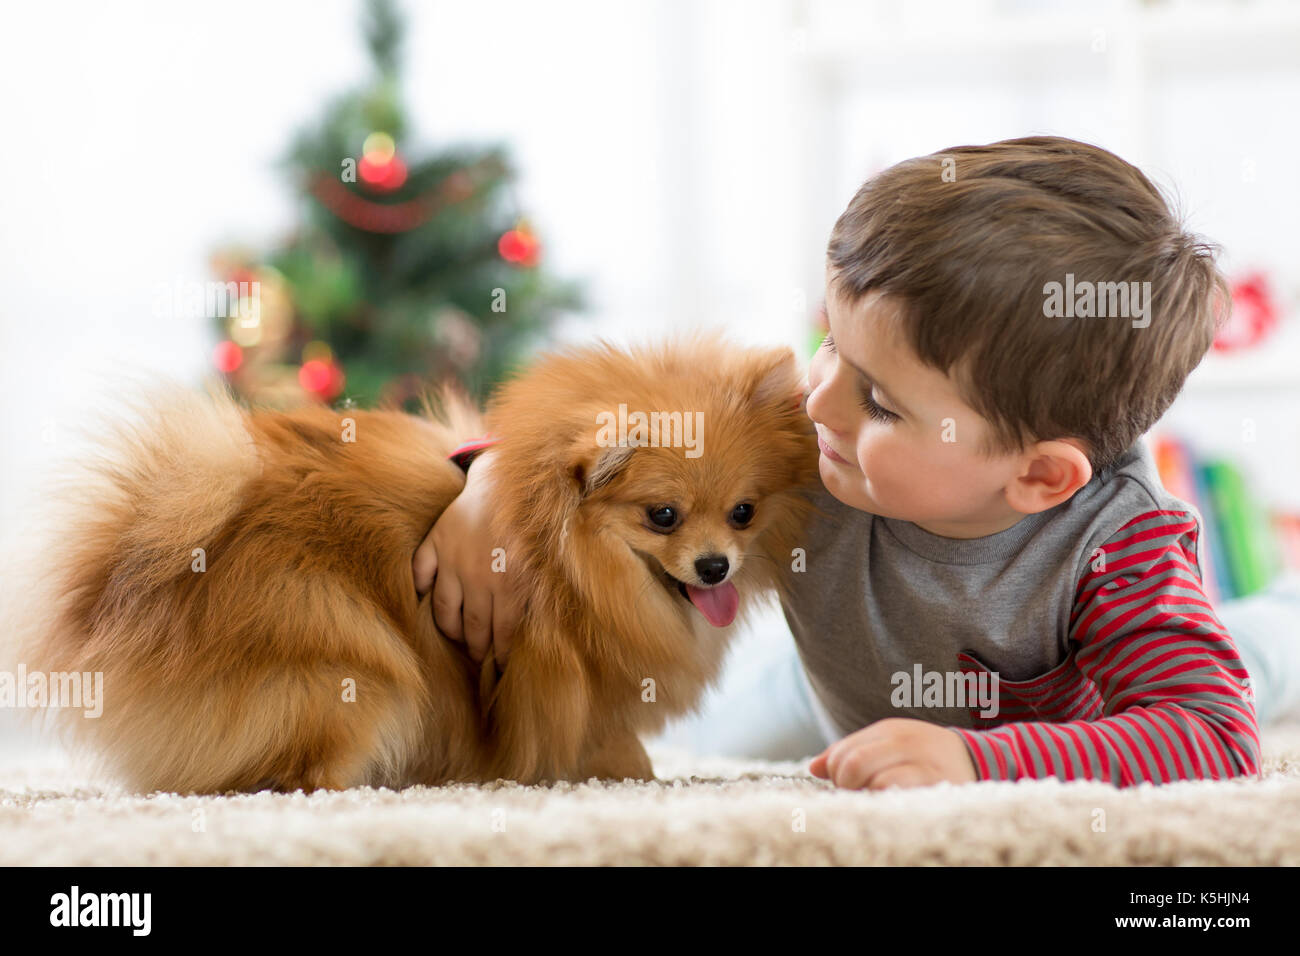 Kleines Kind Junge mit Hund liegend auf dem Boden Weihnachtsbaum Stockfoto